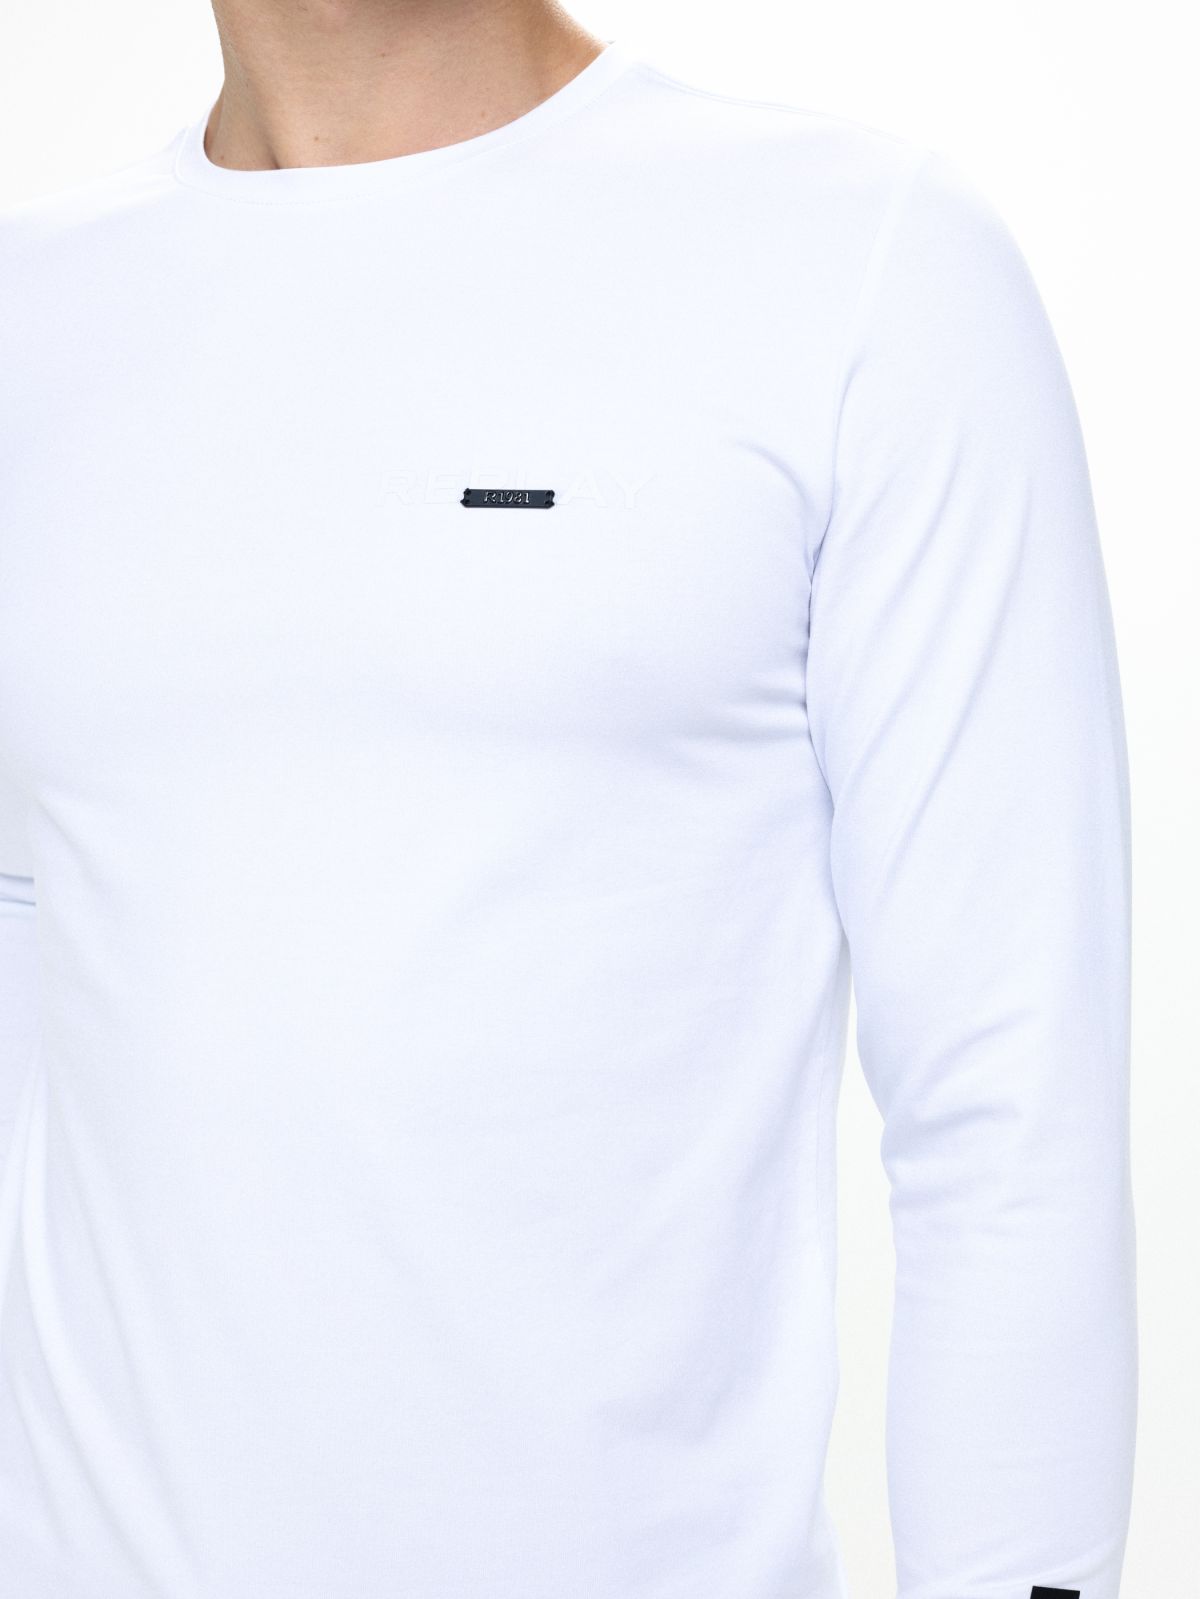  חולצת טי שירט ארוכה עם הדפס לוגו של REPLAY